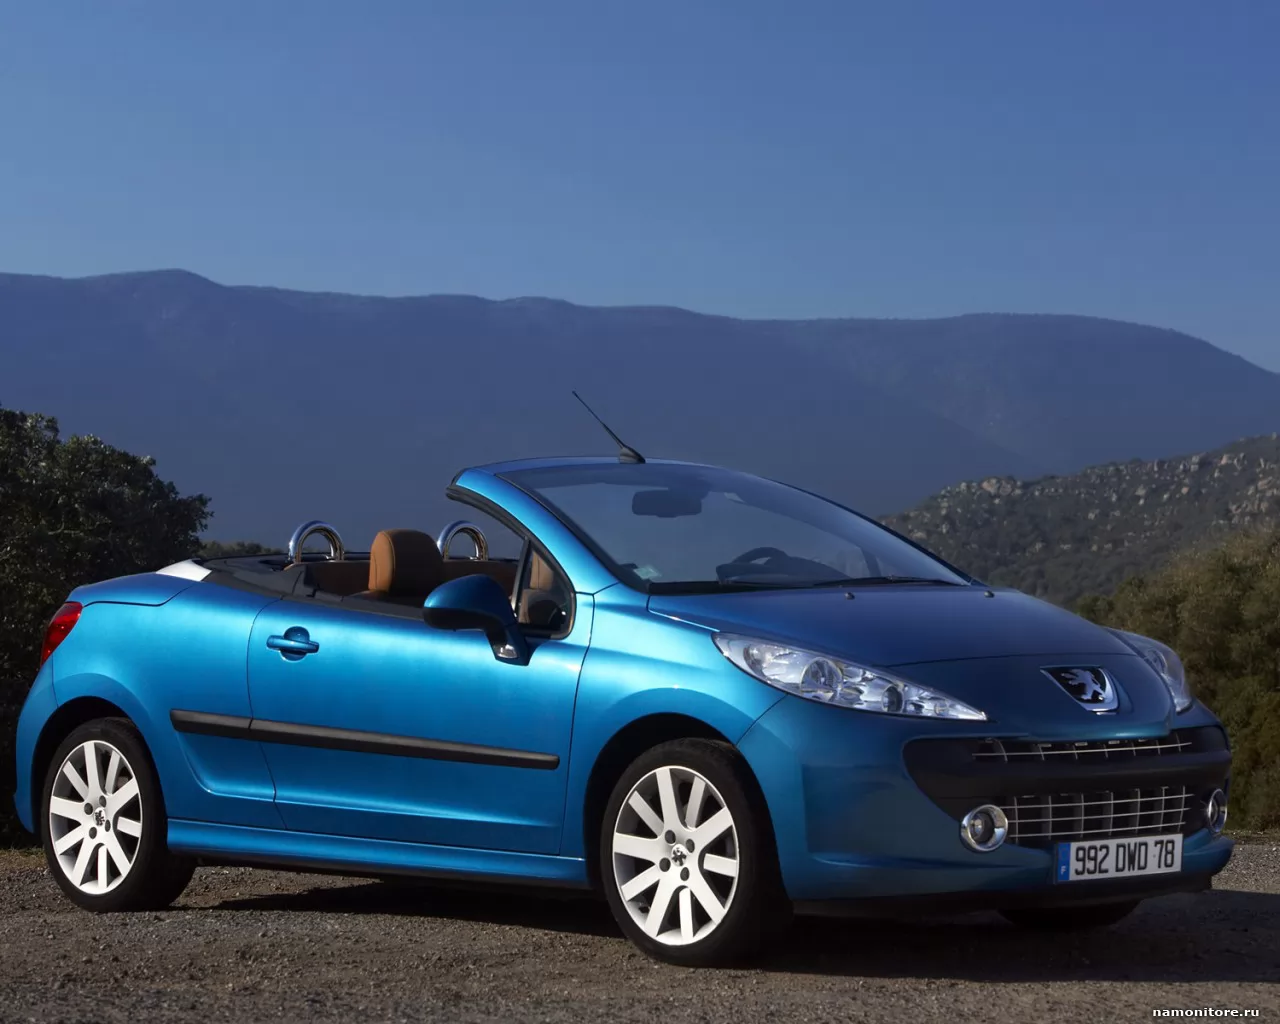 Peugeot – 207 – CC – 2007, Peugeot, автомобили, кабриолет, синее, техника х